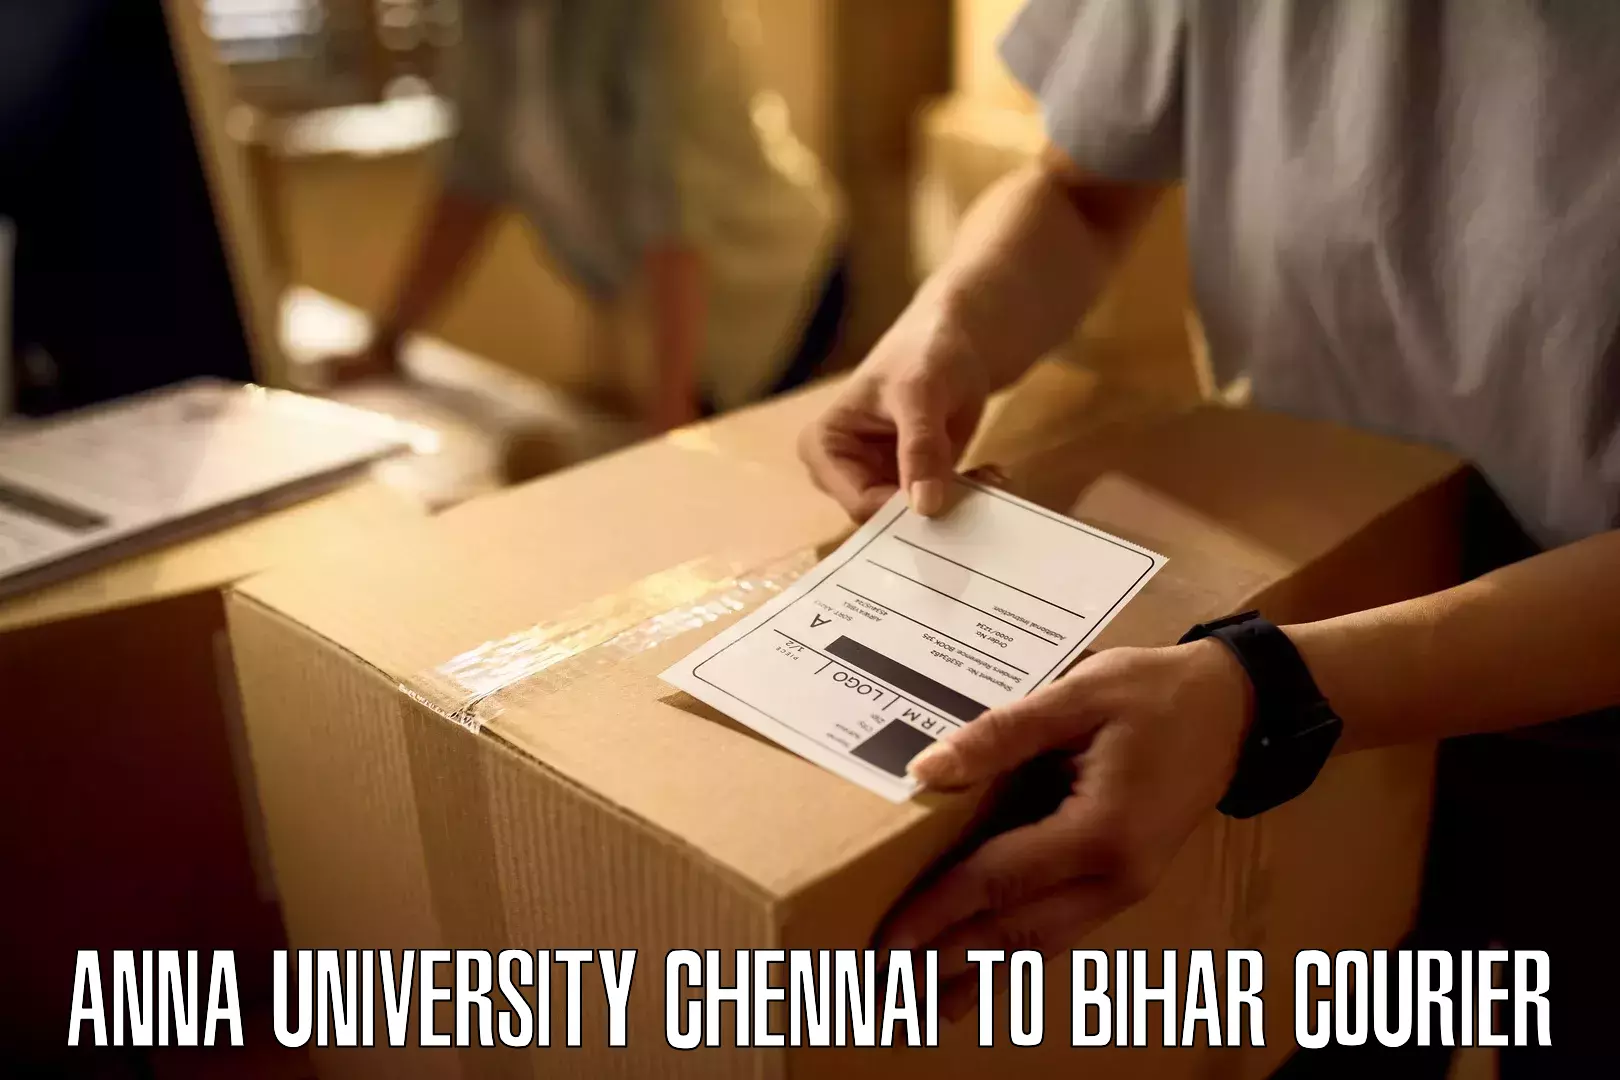 Next day courier Anna University Chennai to Bettiah